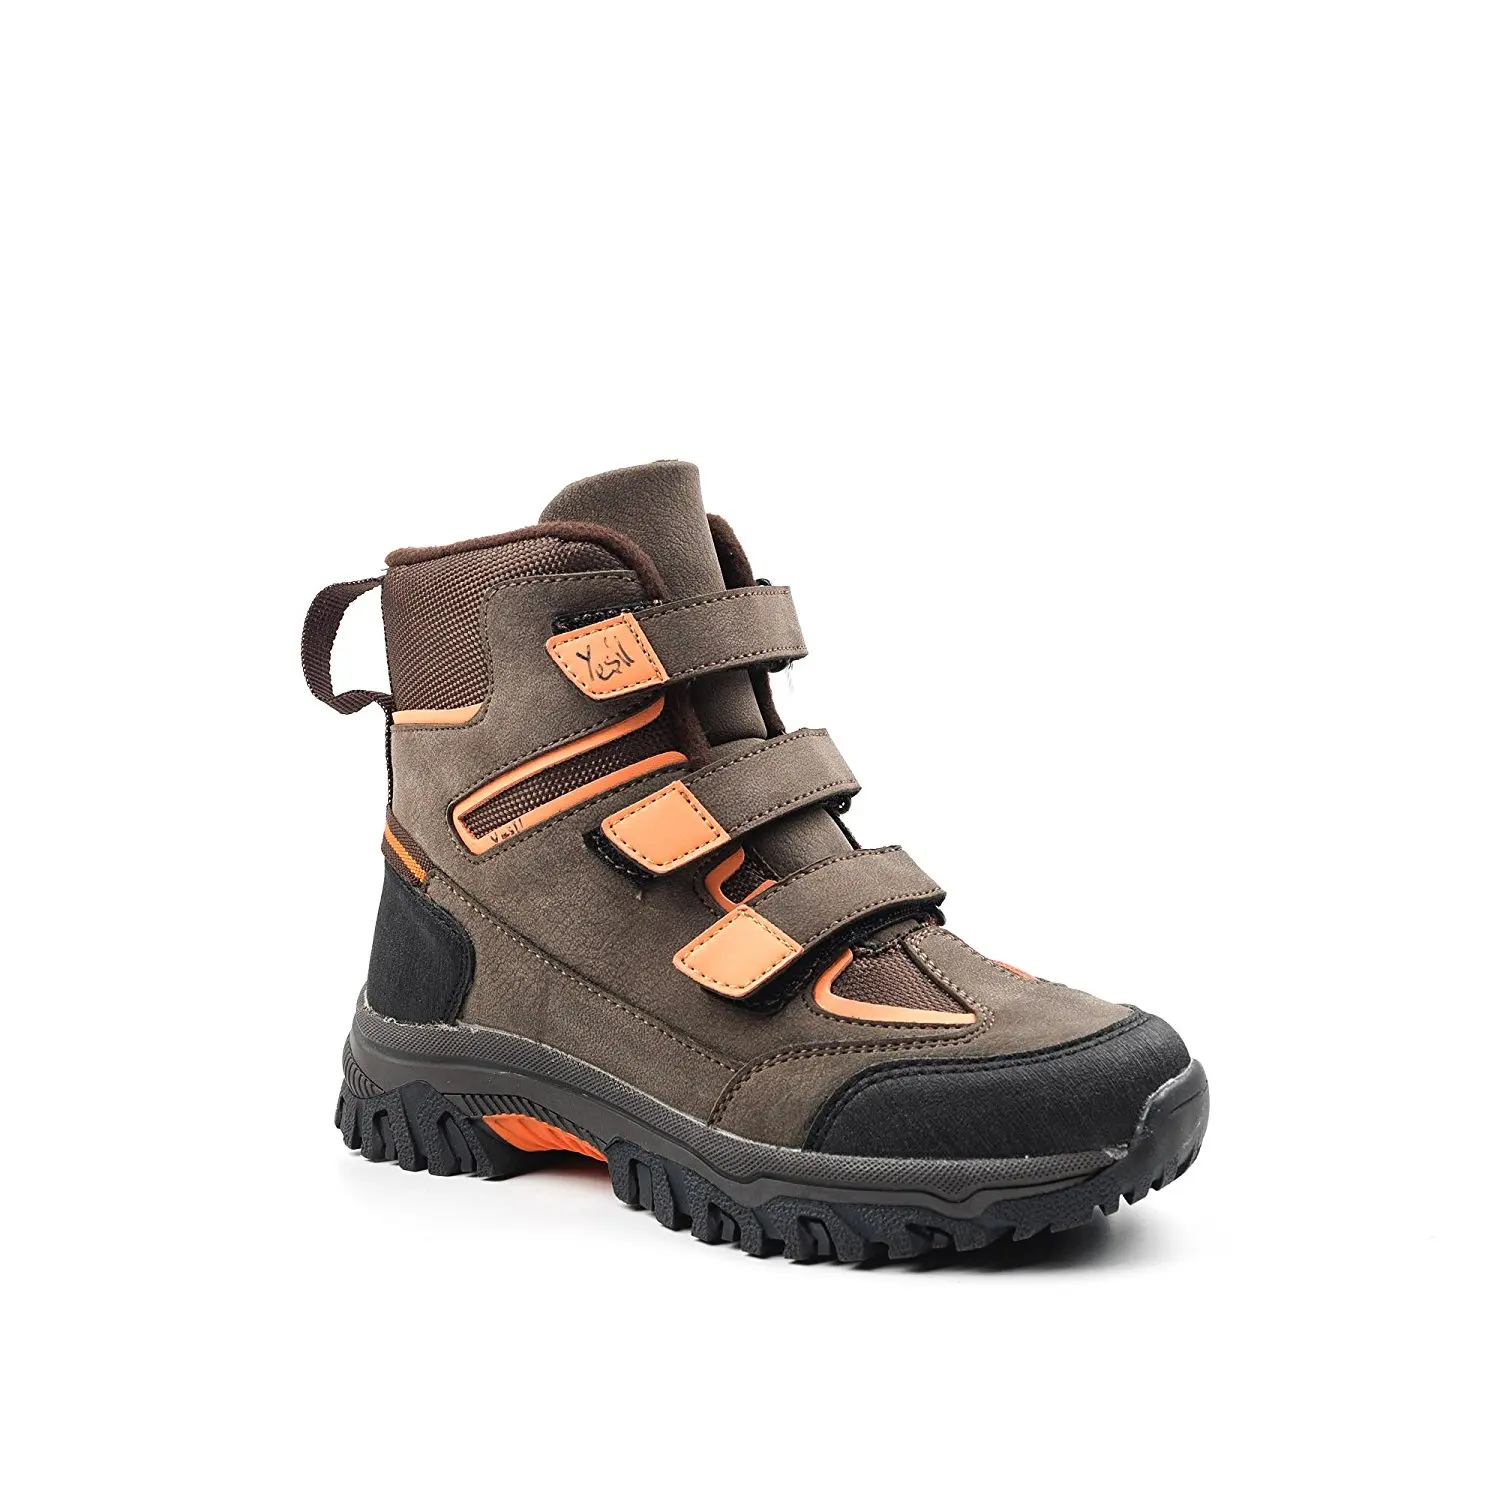 velcro hiking boots online shop 0959d 7c729